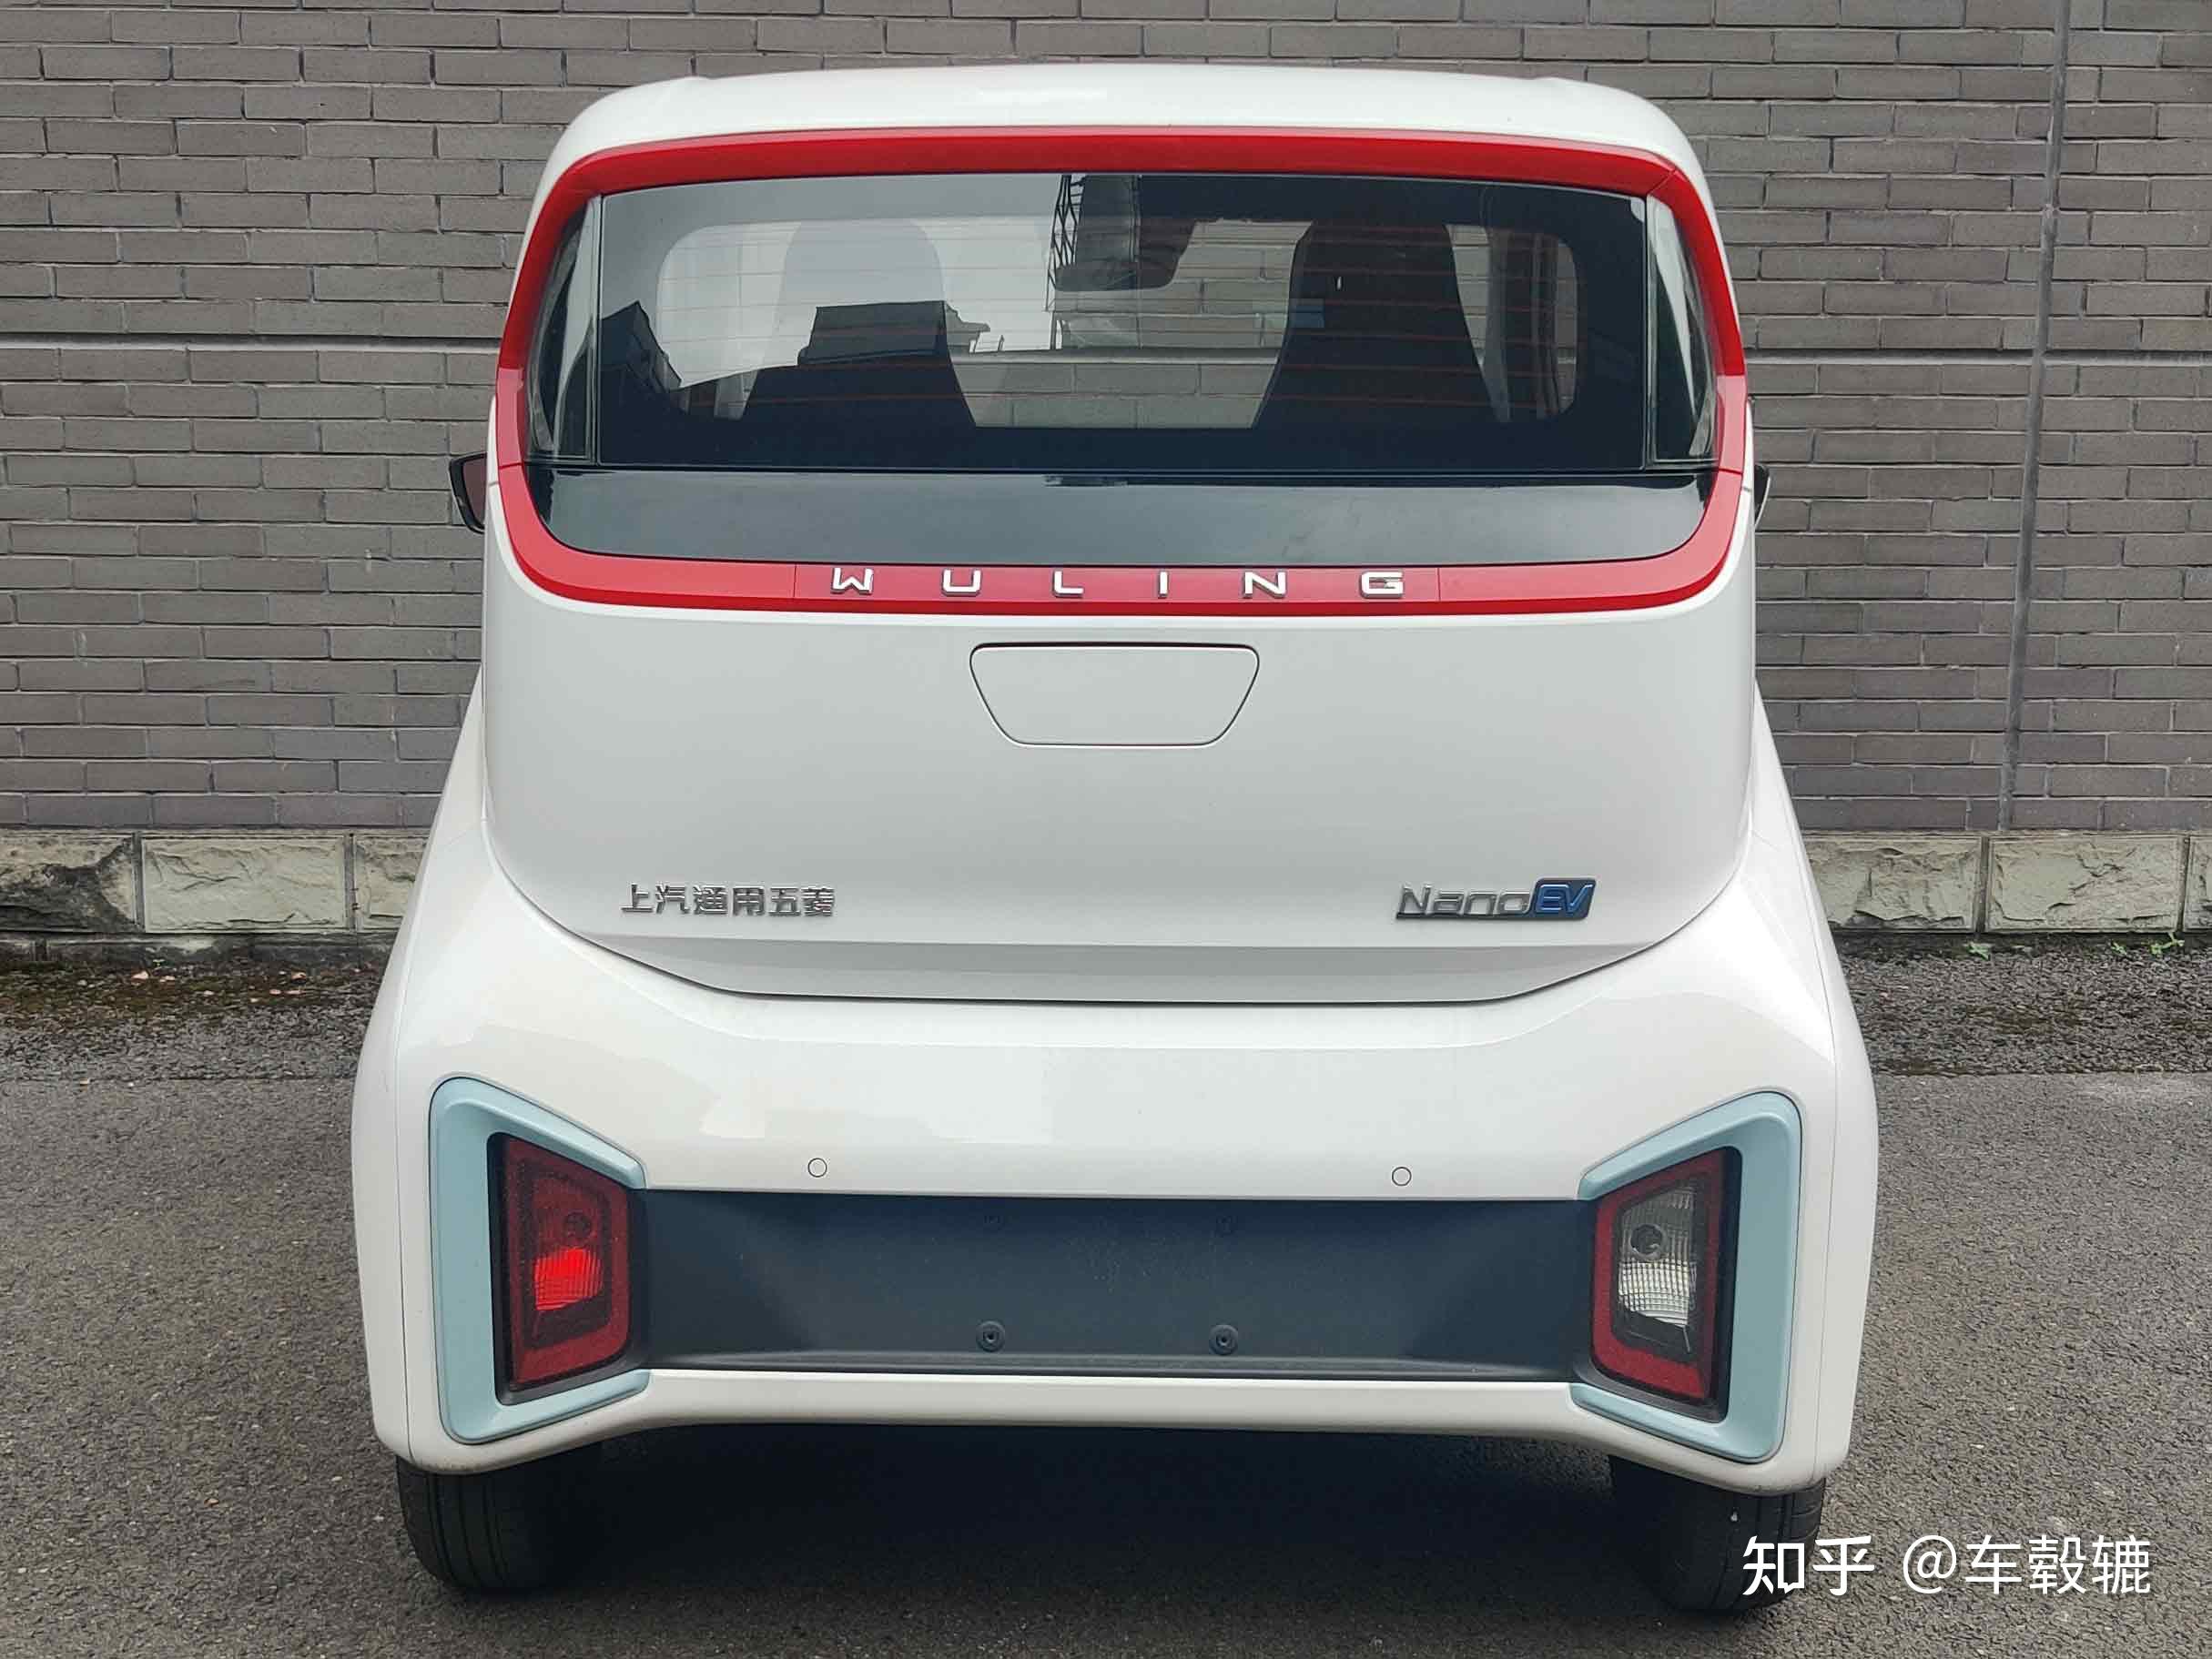 熟悉微型电动车的朋友肯定一眼就能看出五菱的新车其实就是宝骏e200的